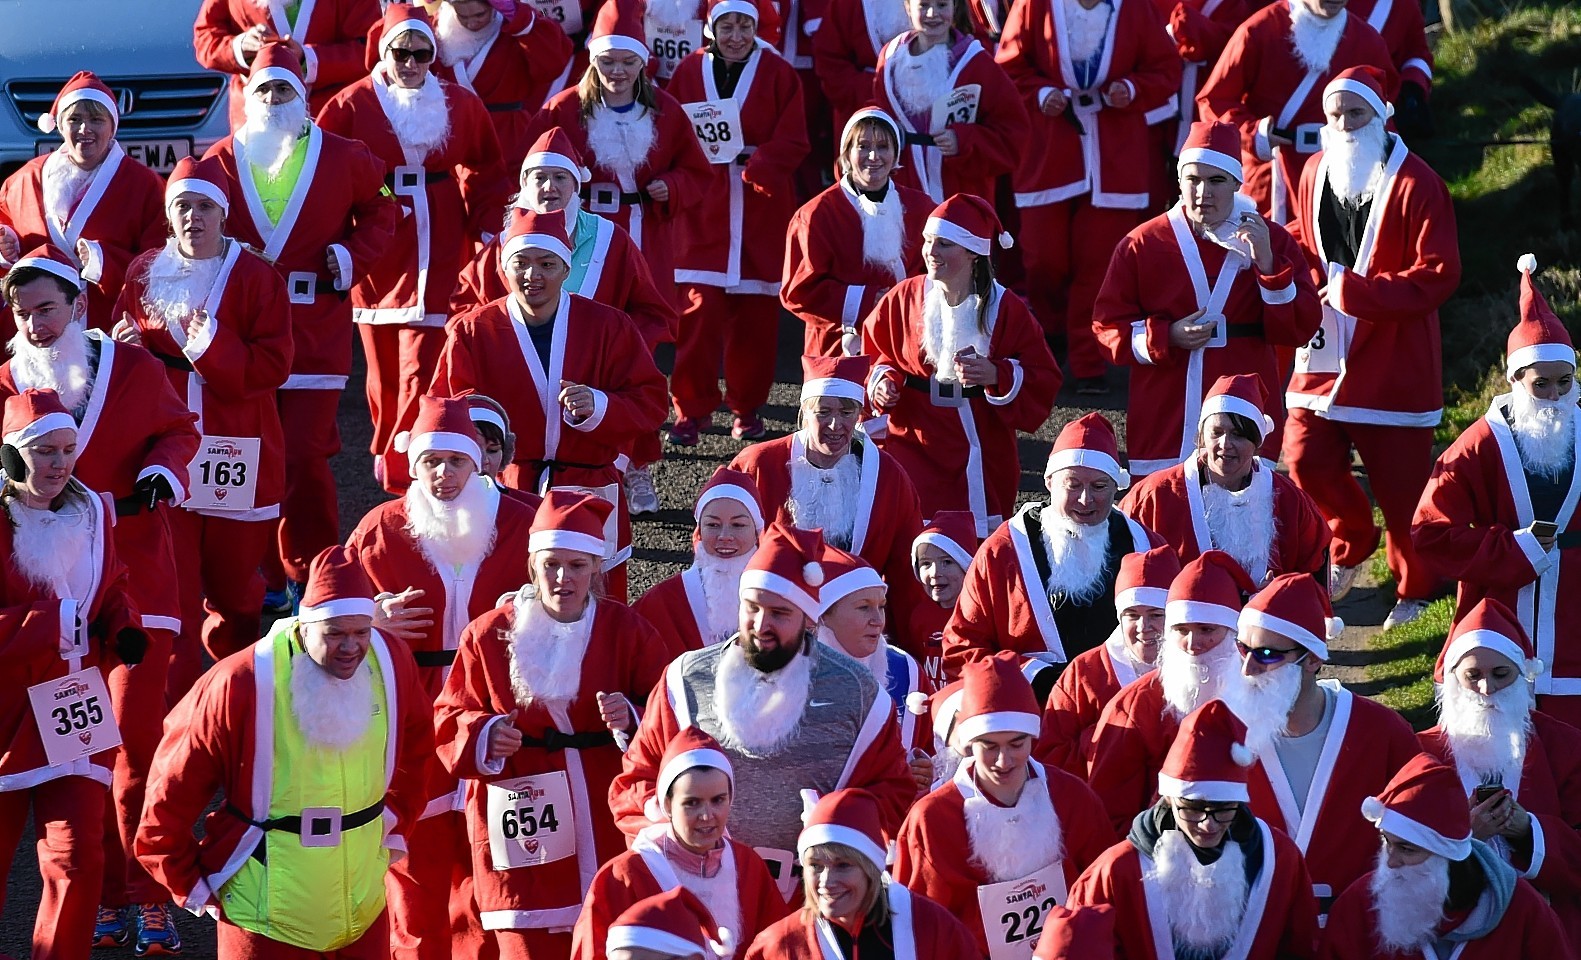 The annual Aberdeen Santa Run